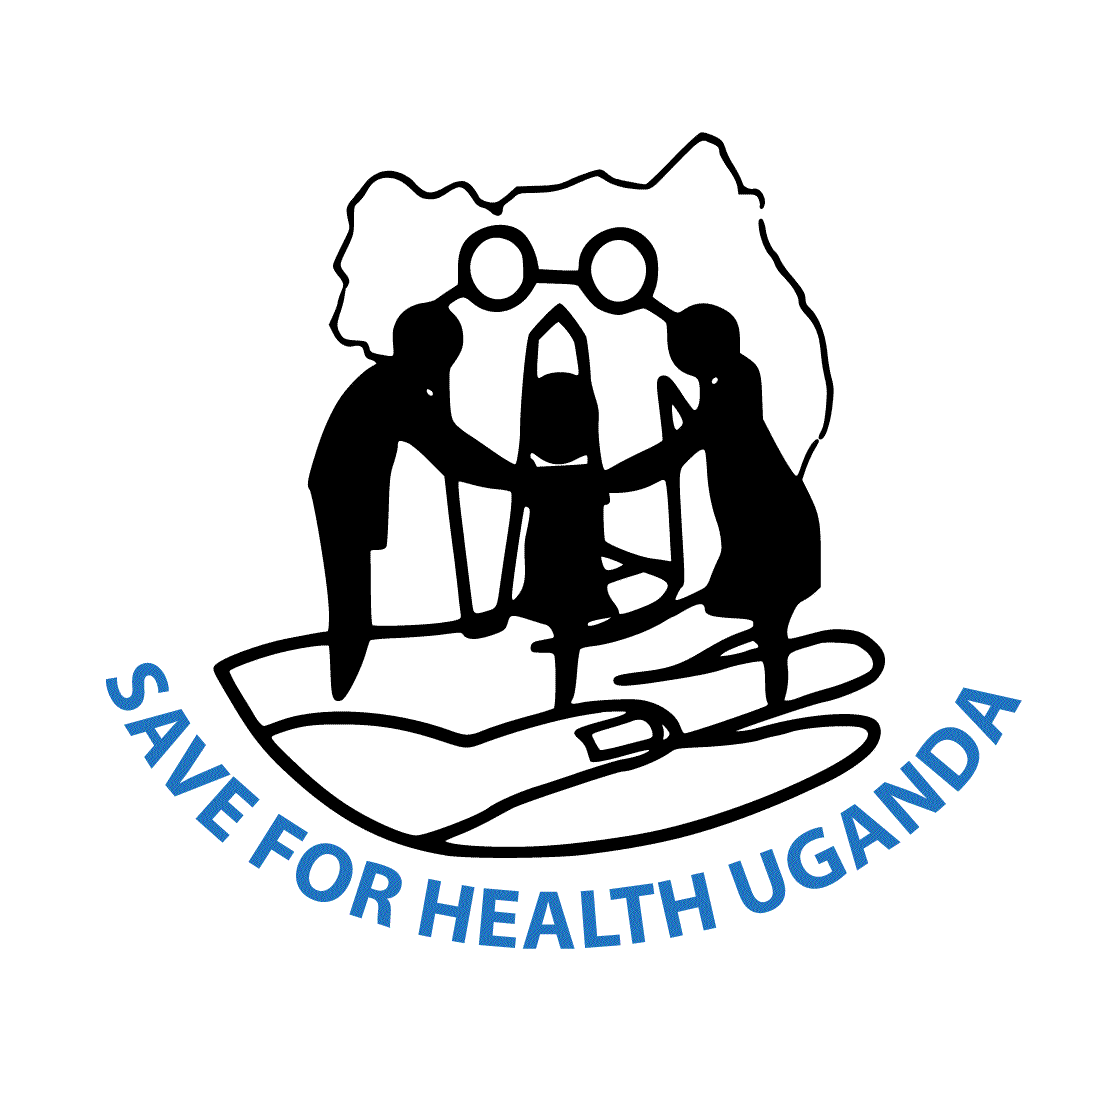 Save for Health Uganda